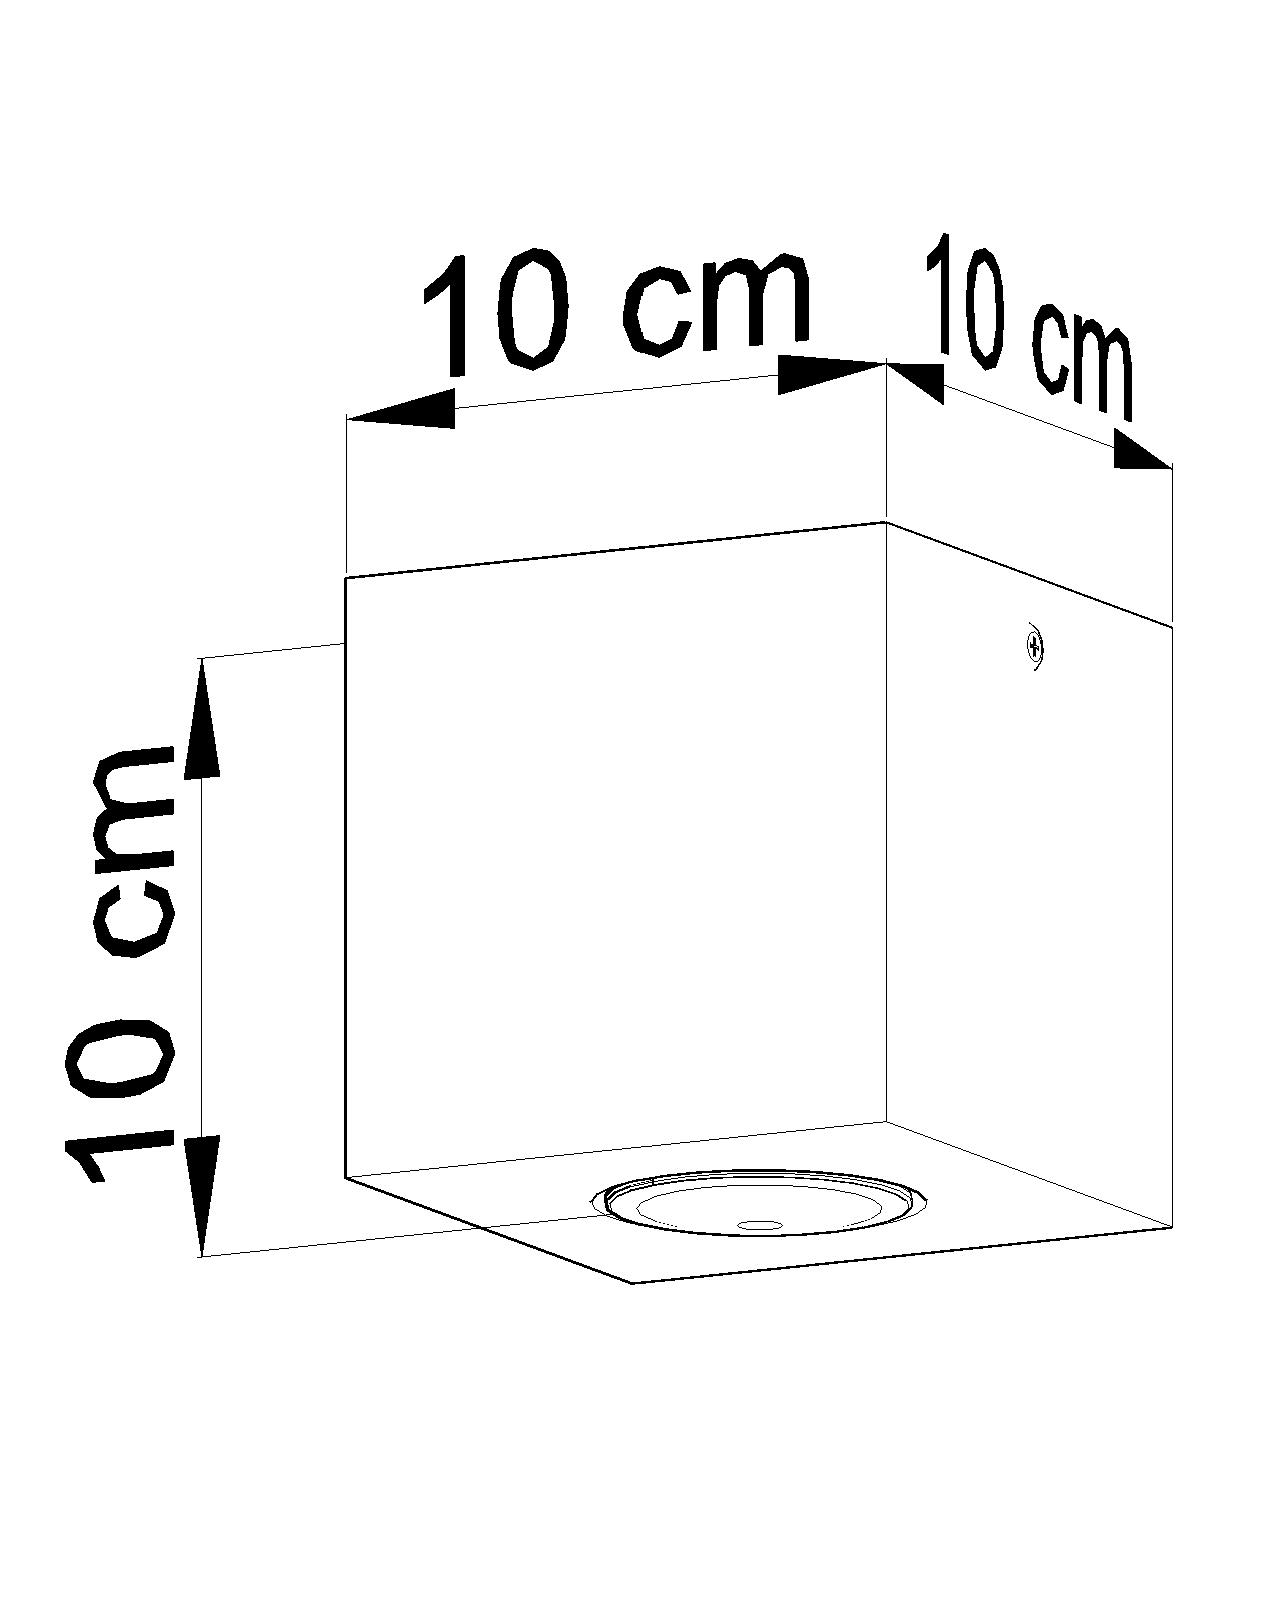 Quadratische Betonlampe Decke B:10cm klein GU10